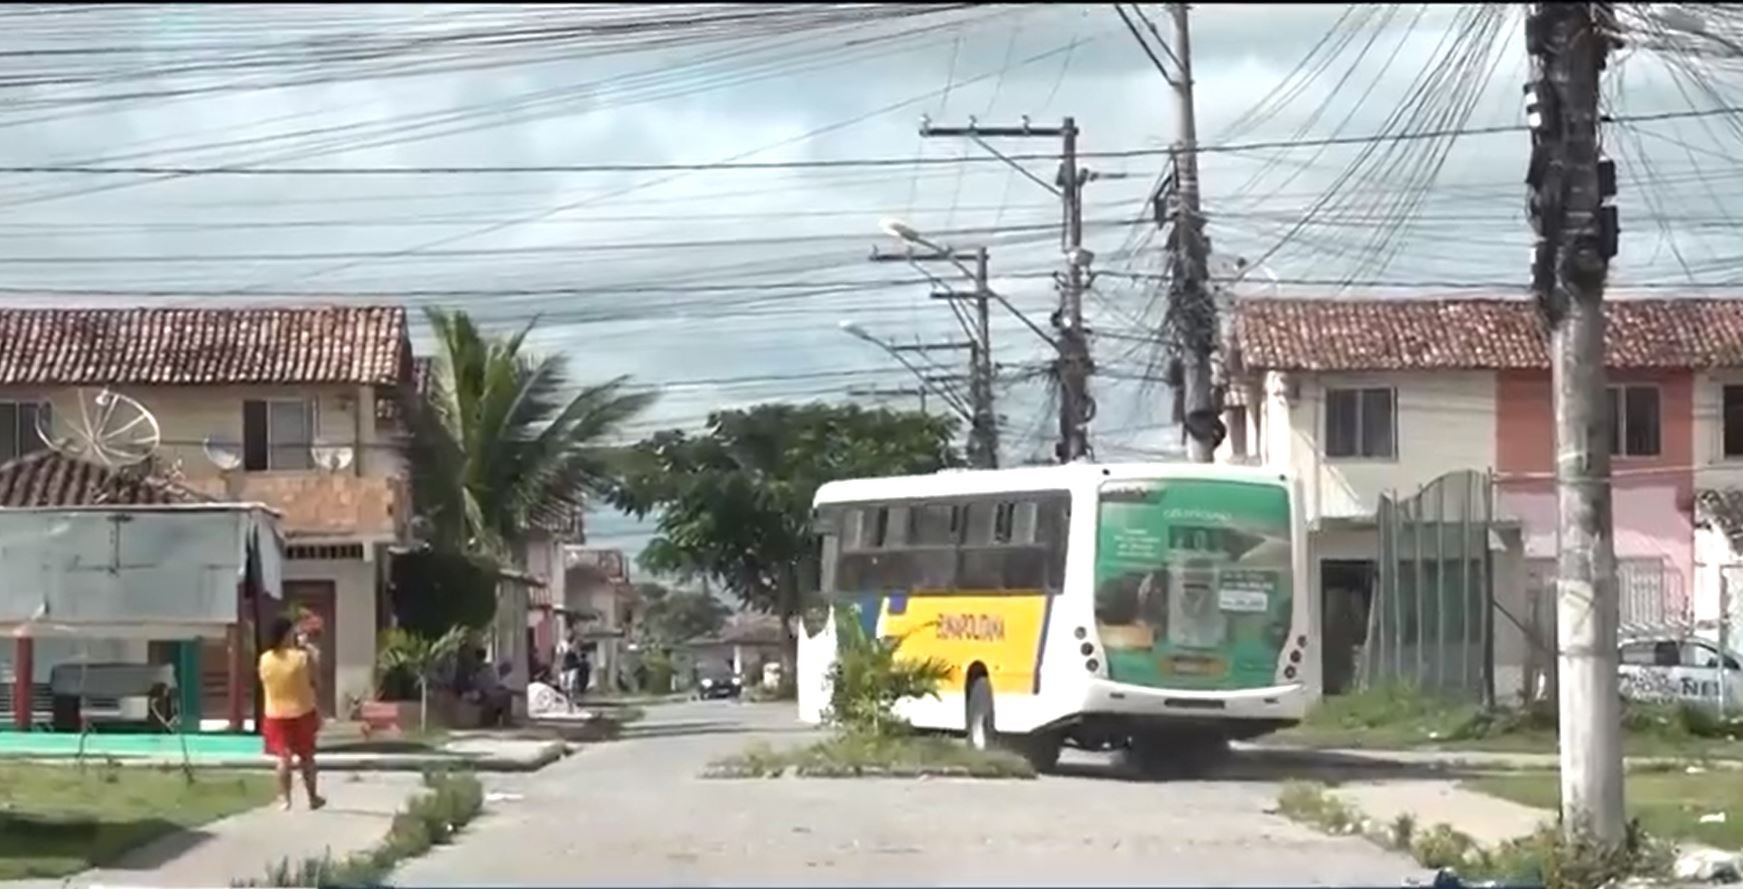 Tarifa de ônibus na cidade de Eunápolis, no extremo sul da Bahia, tem reajuste de R$0,50